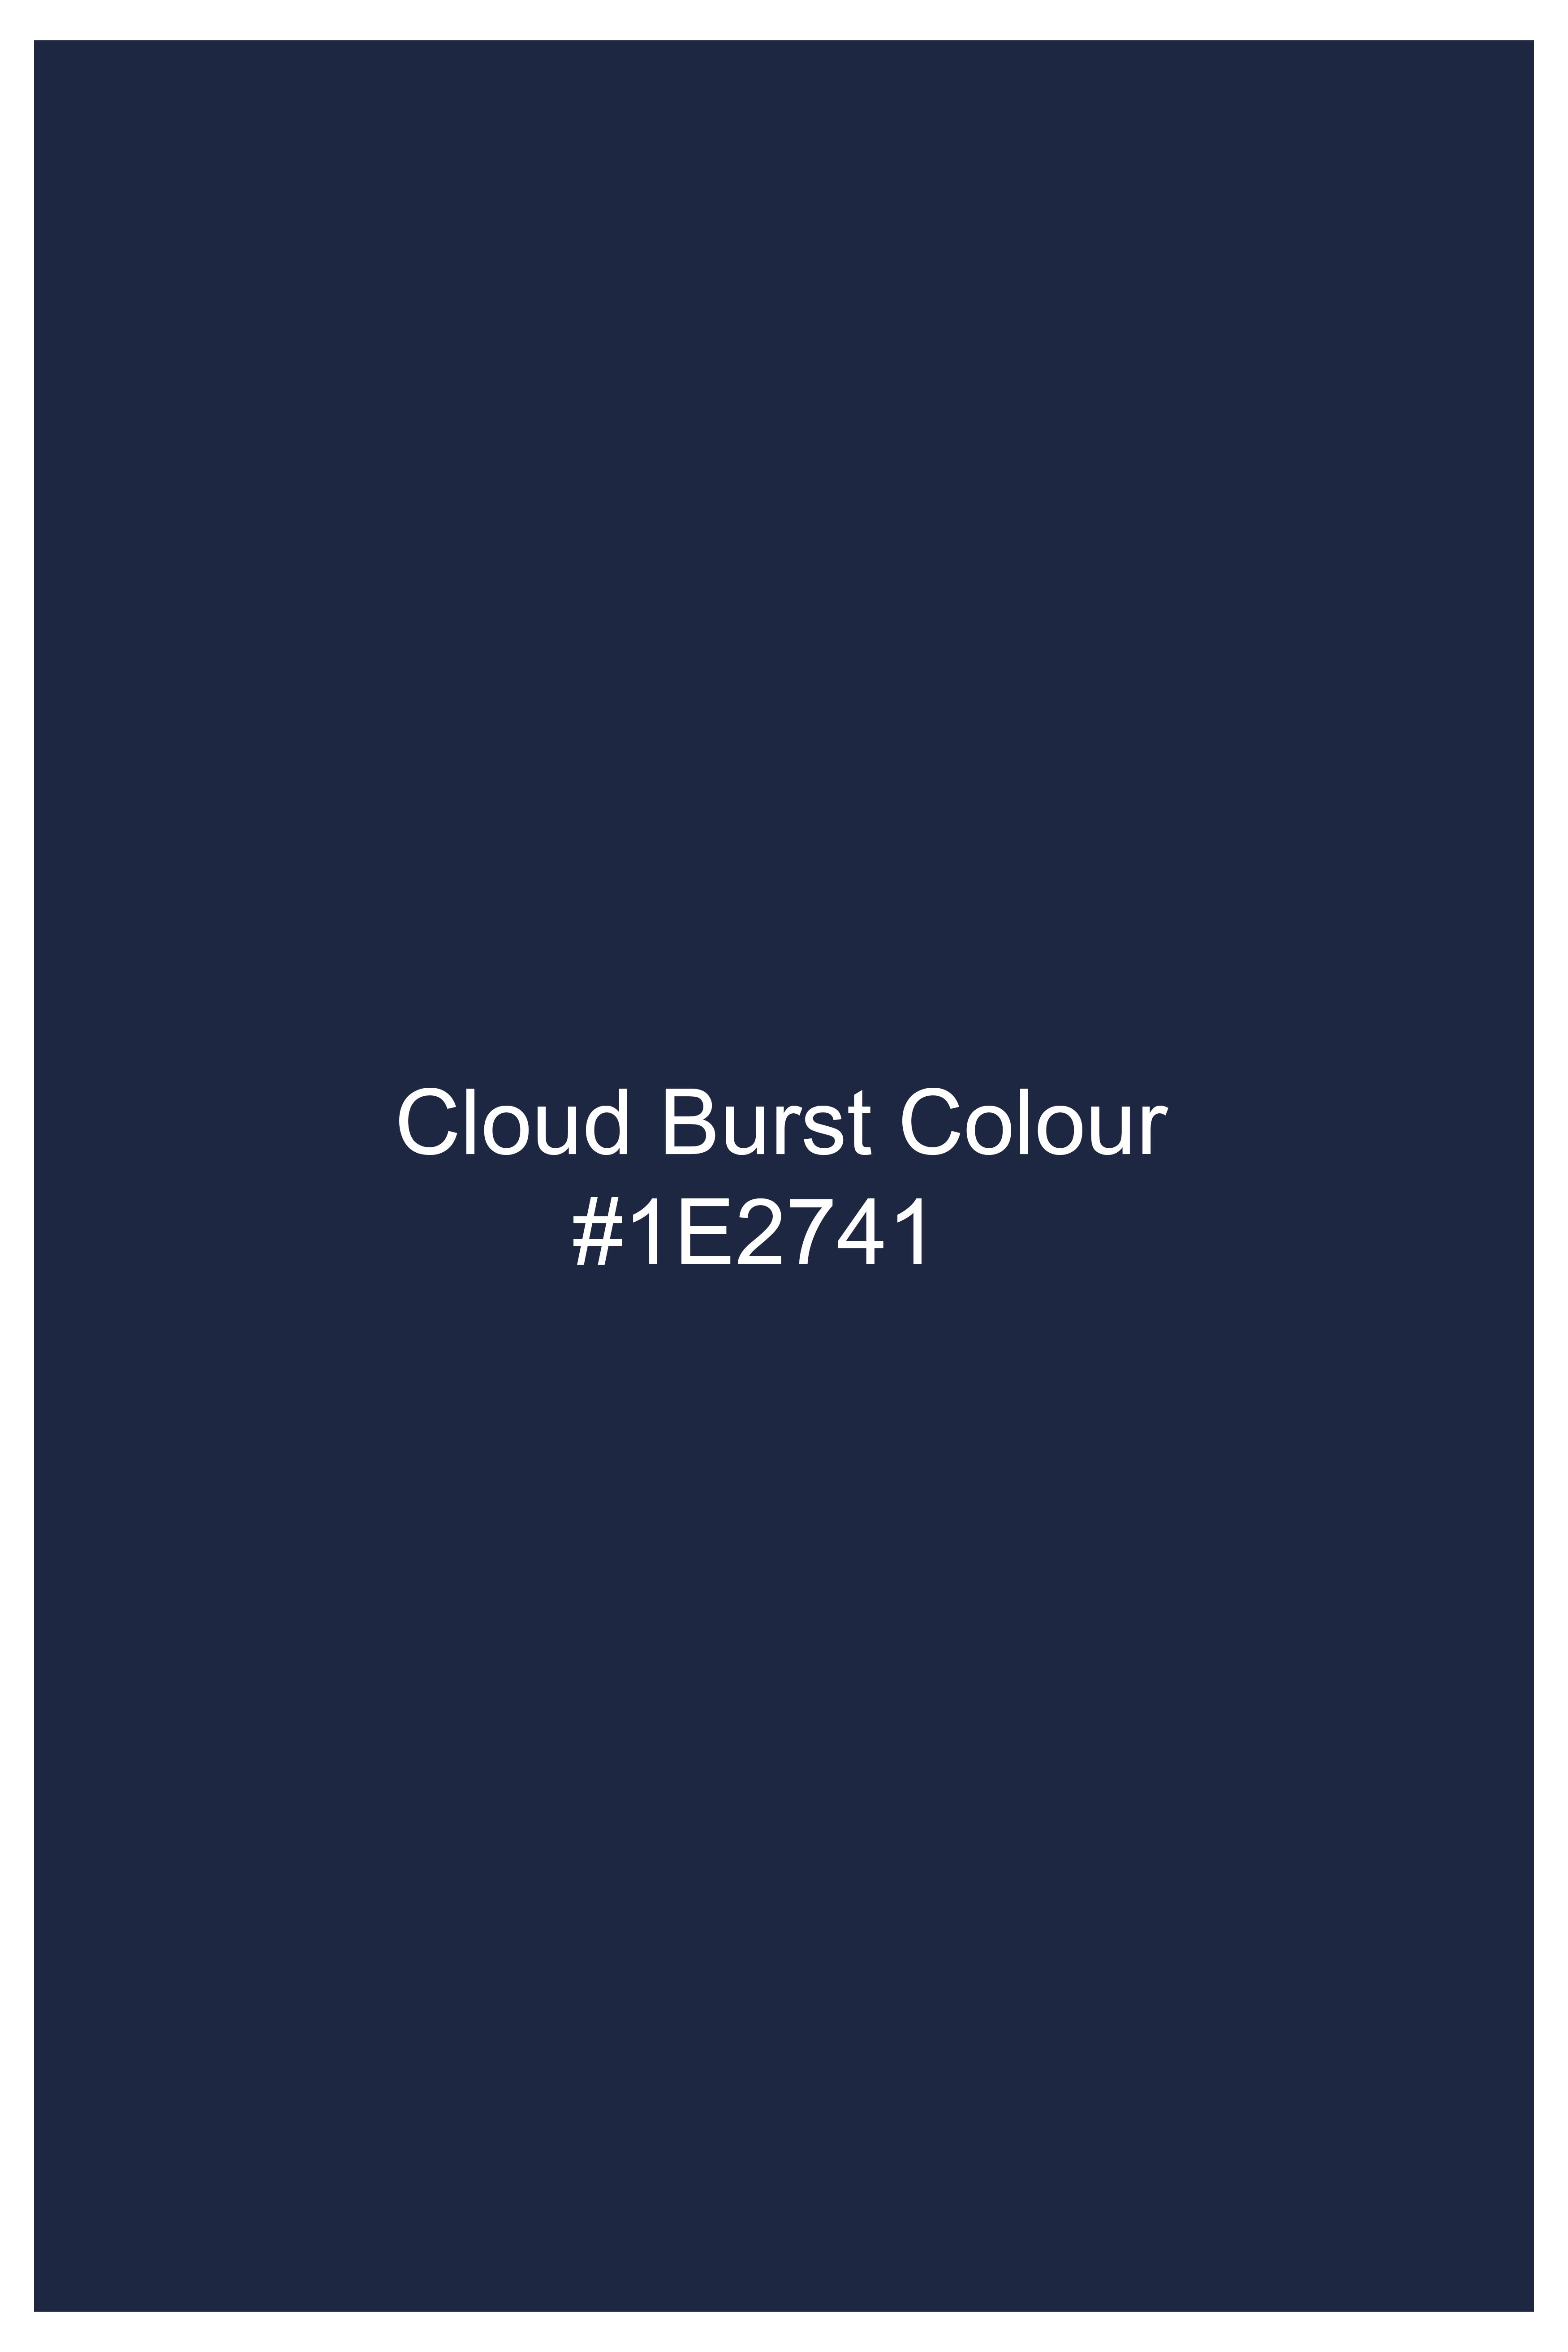 Cloud Burst Blue Wool Rich Waistcoat V3075-36, V3075-38, V3075-40, V3075-42, V3075-44, V3075-46, V3075-48, V3075-50, V3075-75, V3075-54, V3075-56, V3075-58, V3075-60